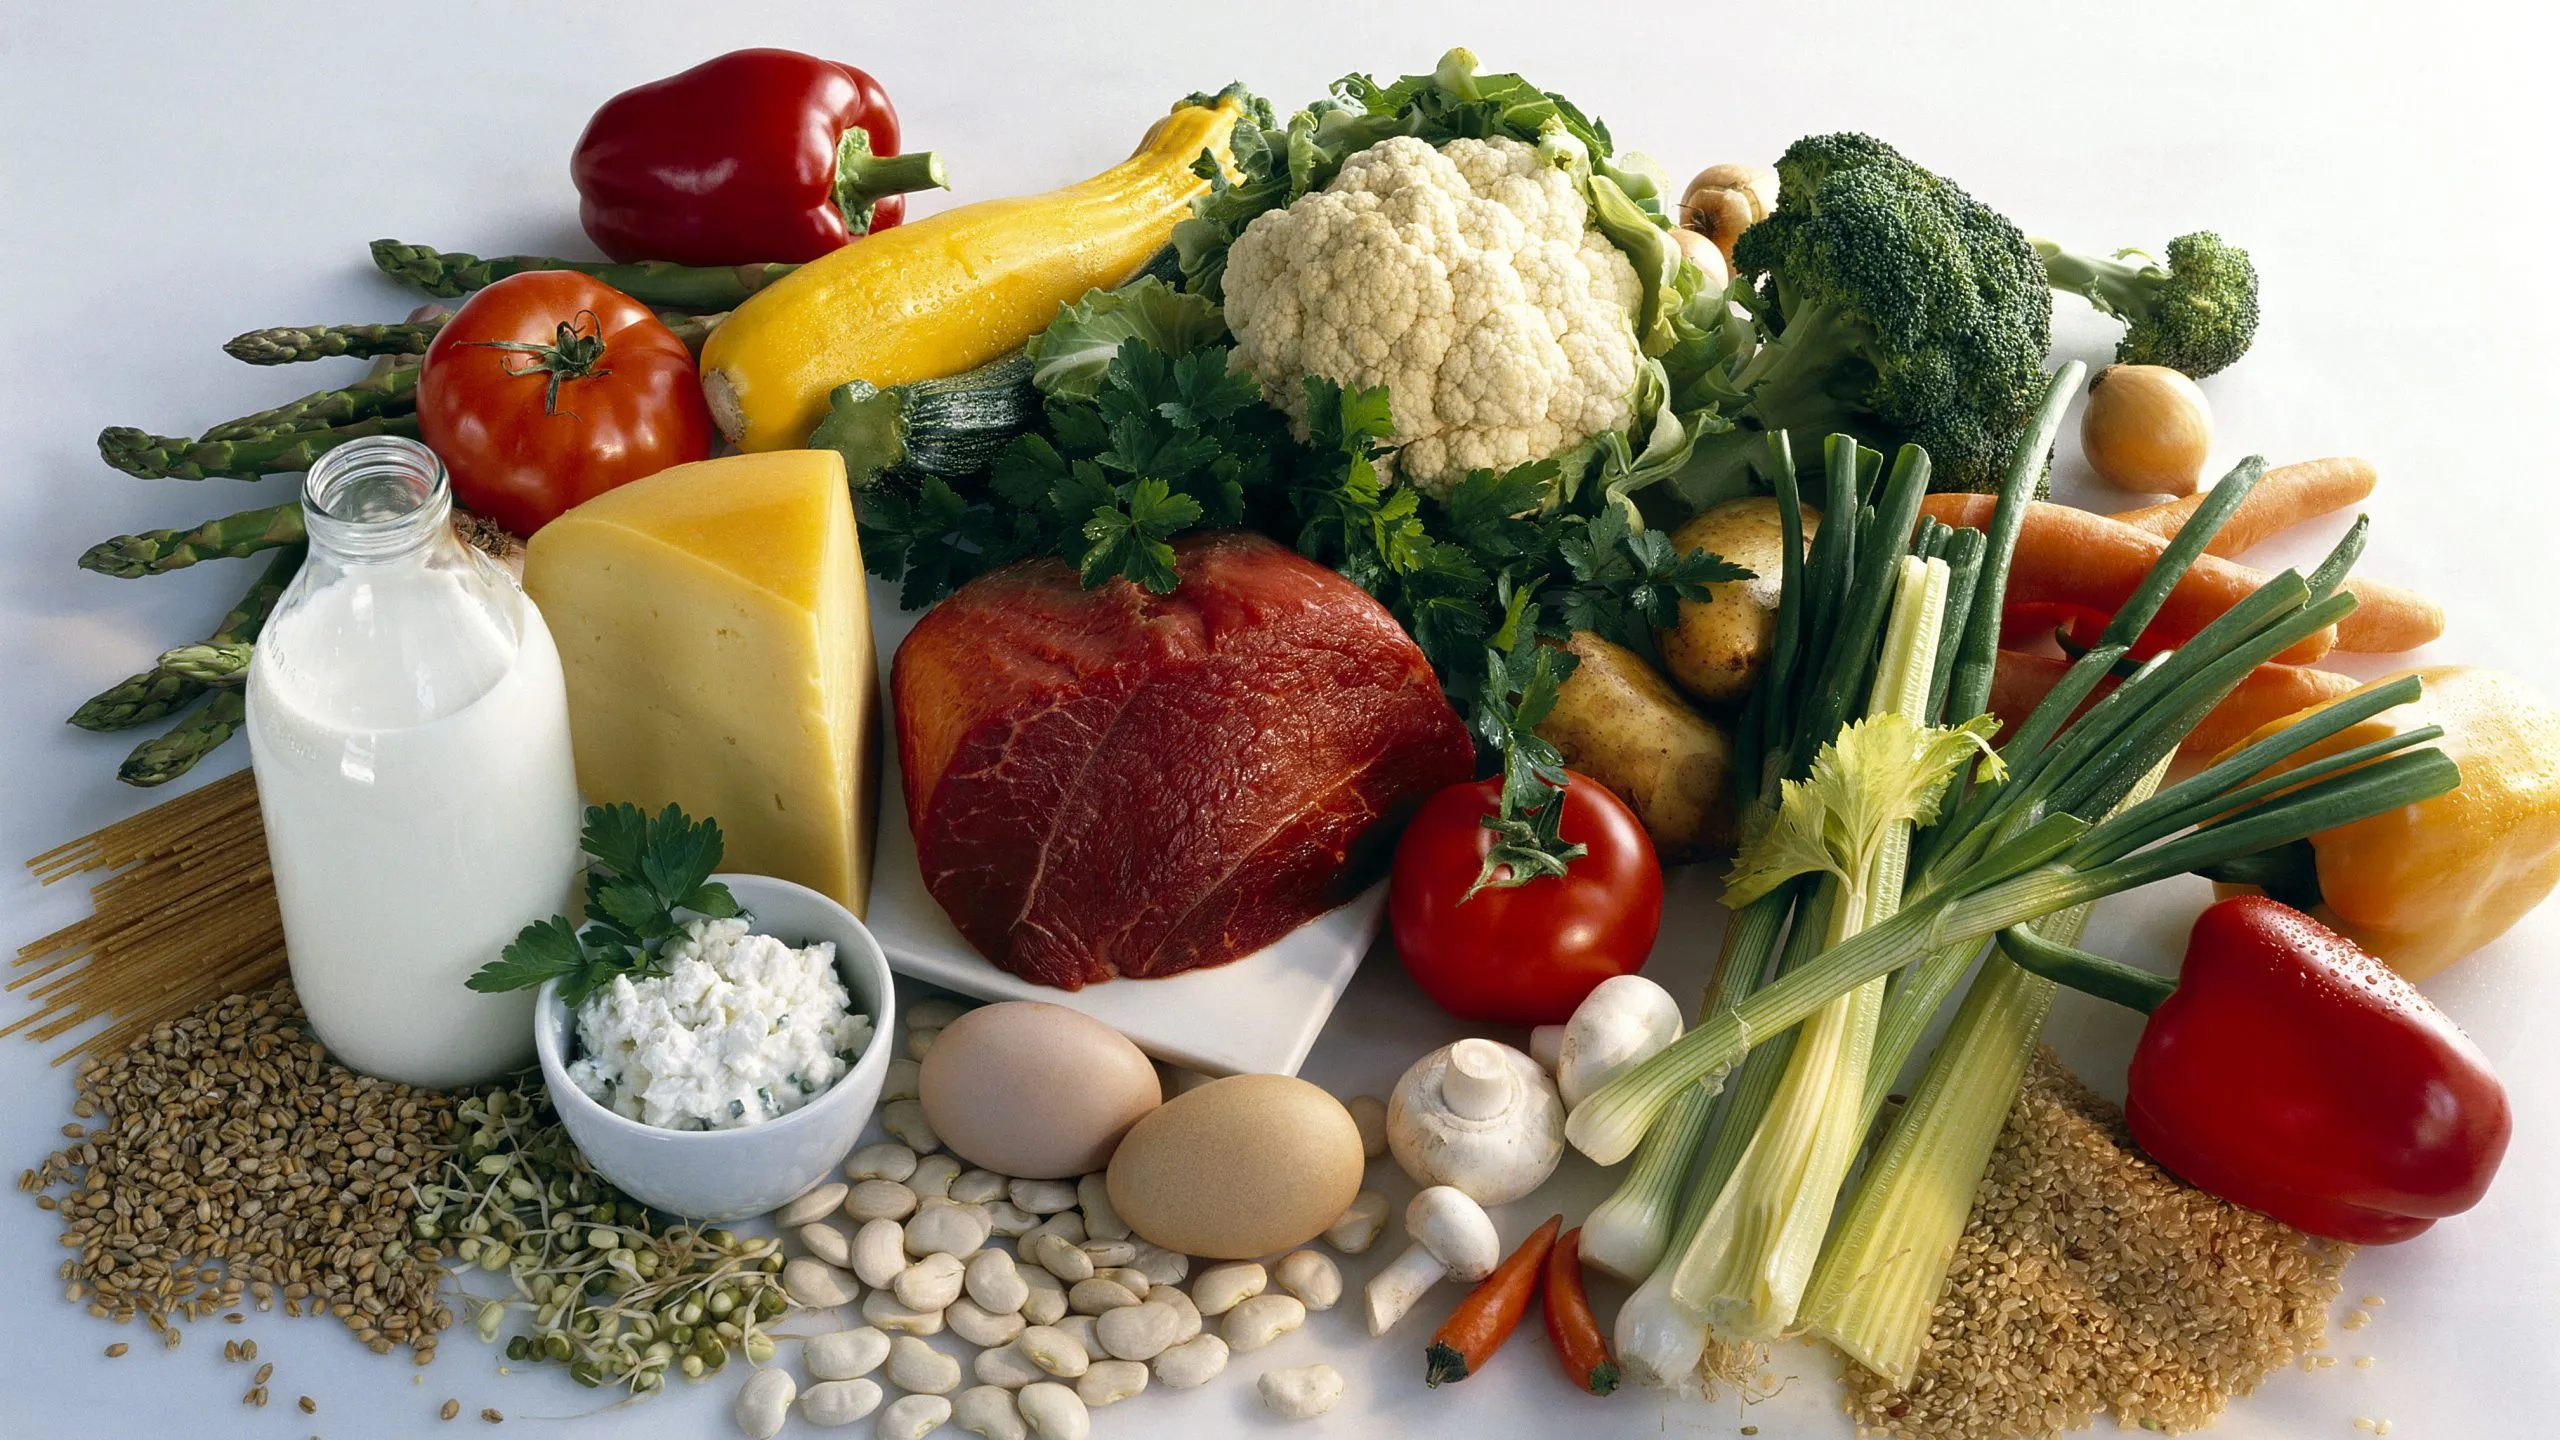 المادة المغذية هي مادة ضرورية للكائن الحي، للقيام بوظائفه الحيوية.